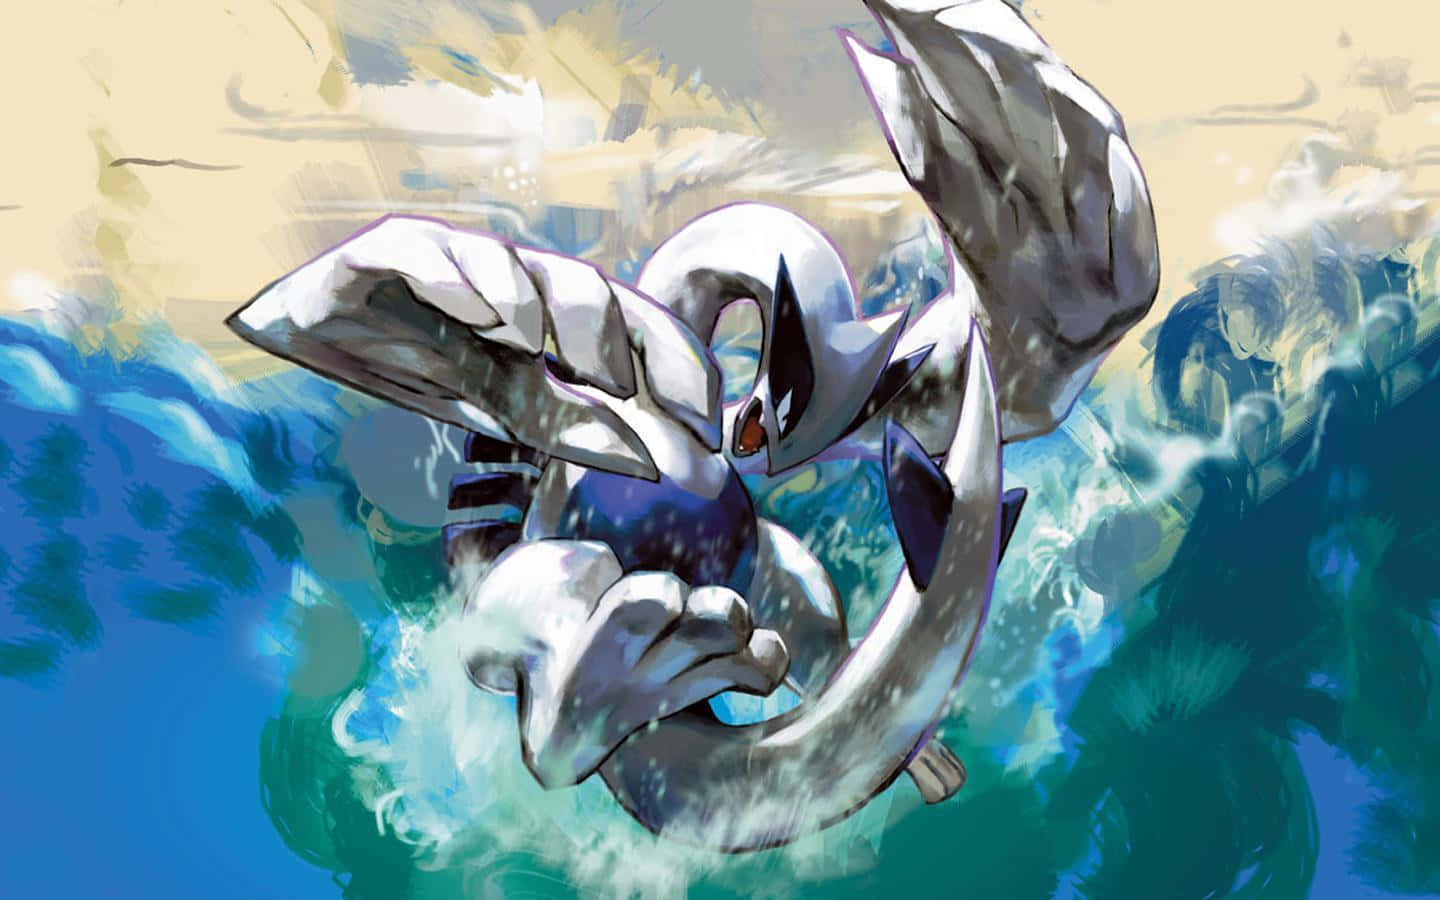 Einweißes Und Blaues Pokémon, Das Im Wasser Fliegt.